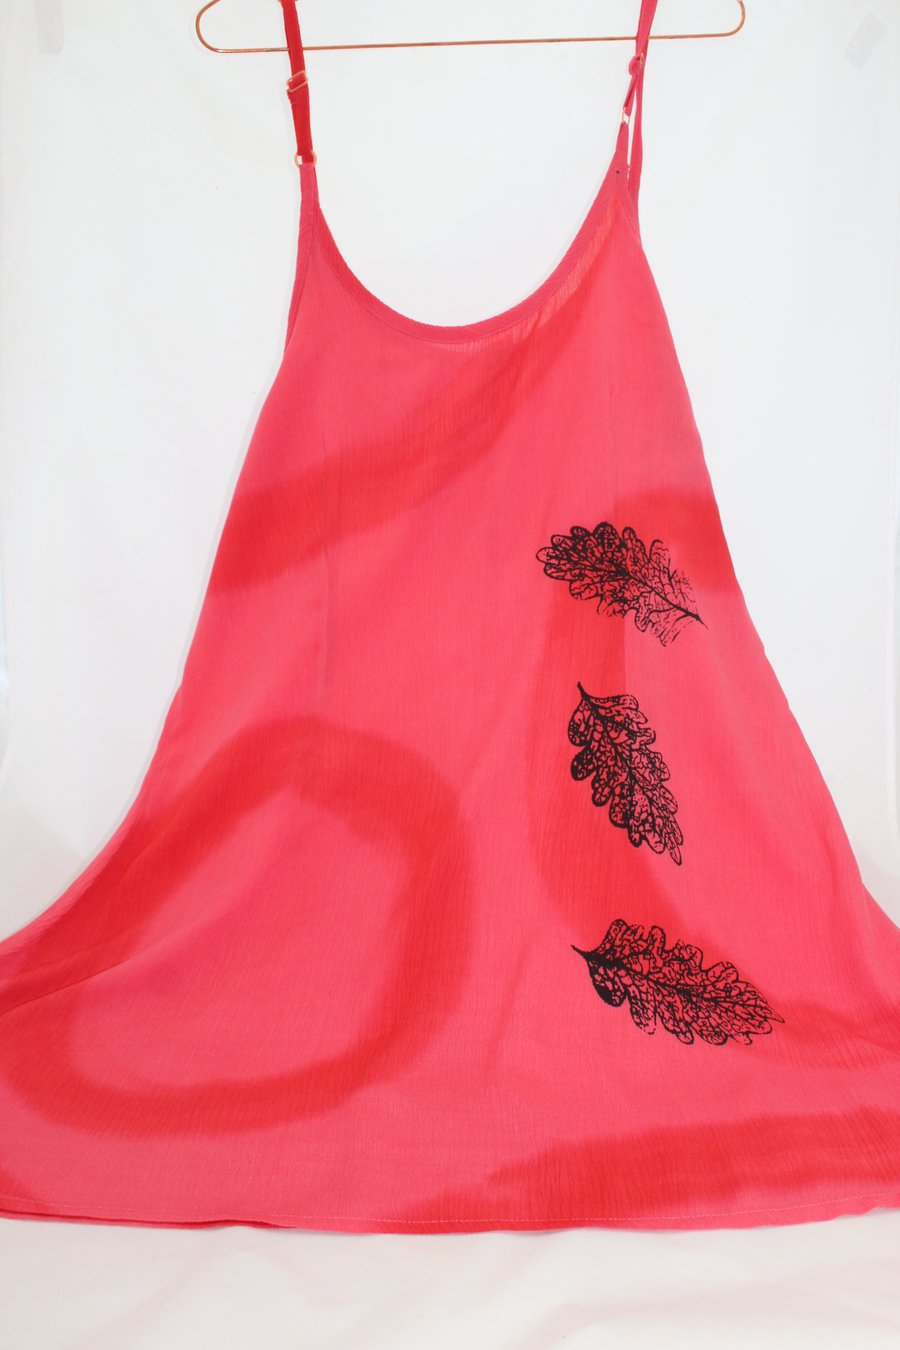 Vintage 90's Ladies oak leaf hand print Dress,Re worked Summer  dress,up cycled